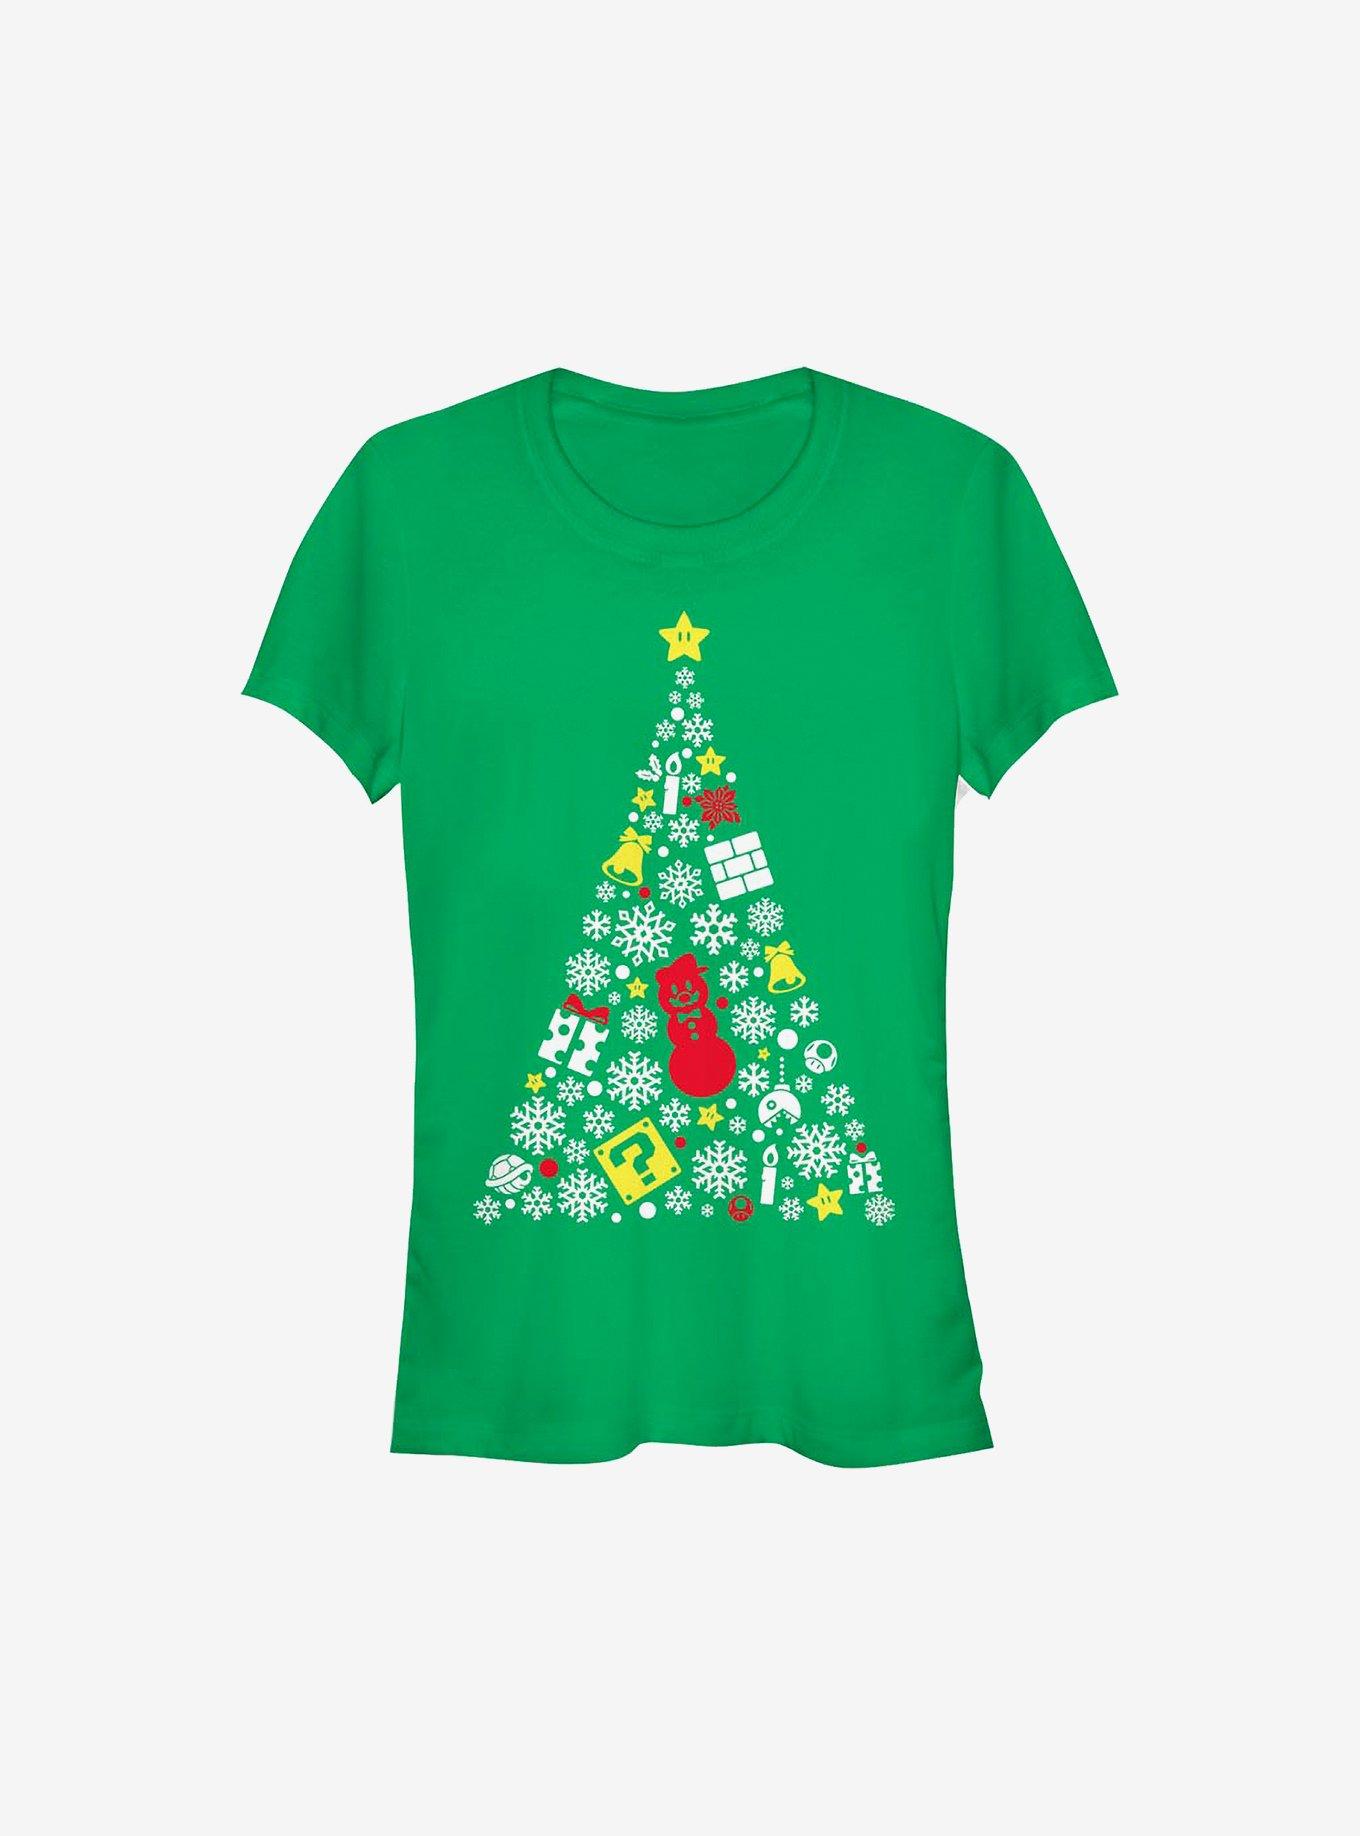 Super Mario Evergreen Christmas Tree Girls T-Shirt